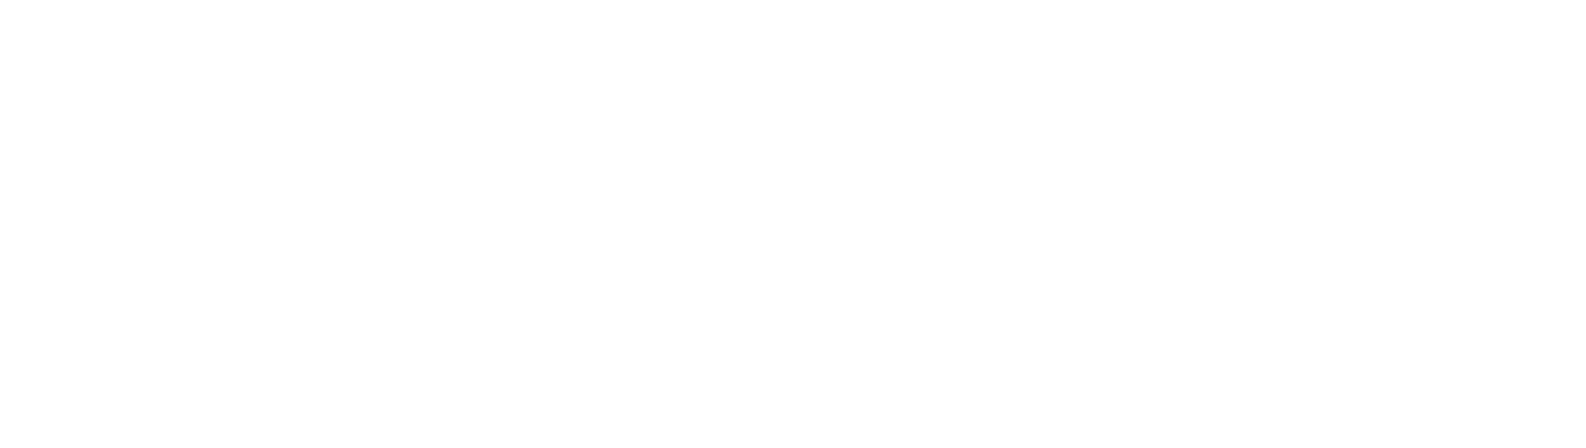 Invitae
 logo grand pour les fonds sombres (PNG transparent)